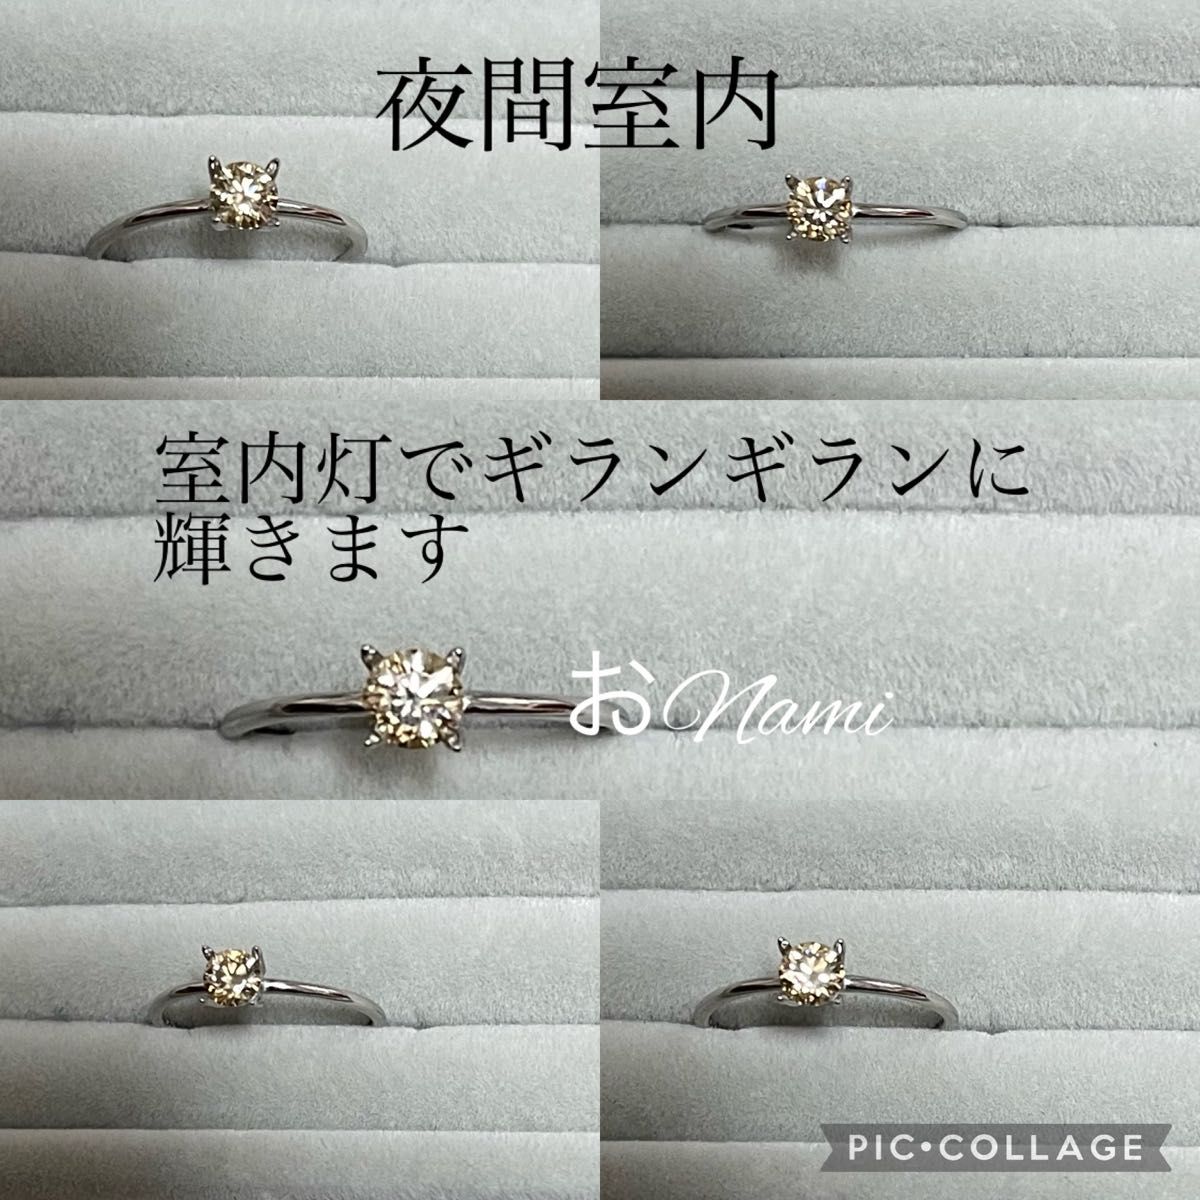 【ブラウンモアッサナイトダイヤモンド】4mm モアサナイト ダイヤモンド